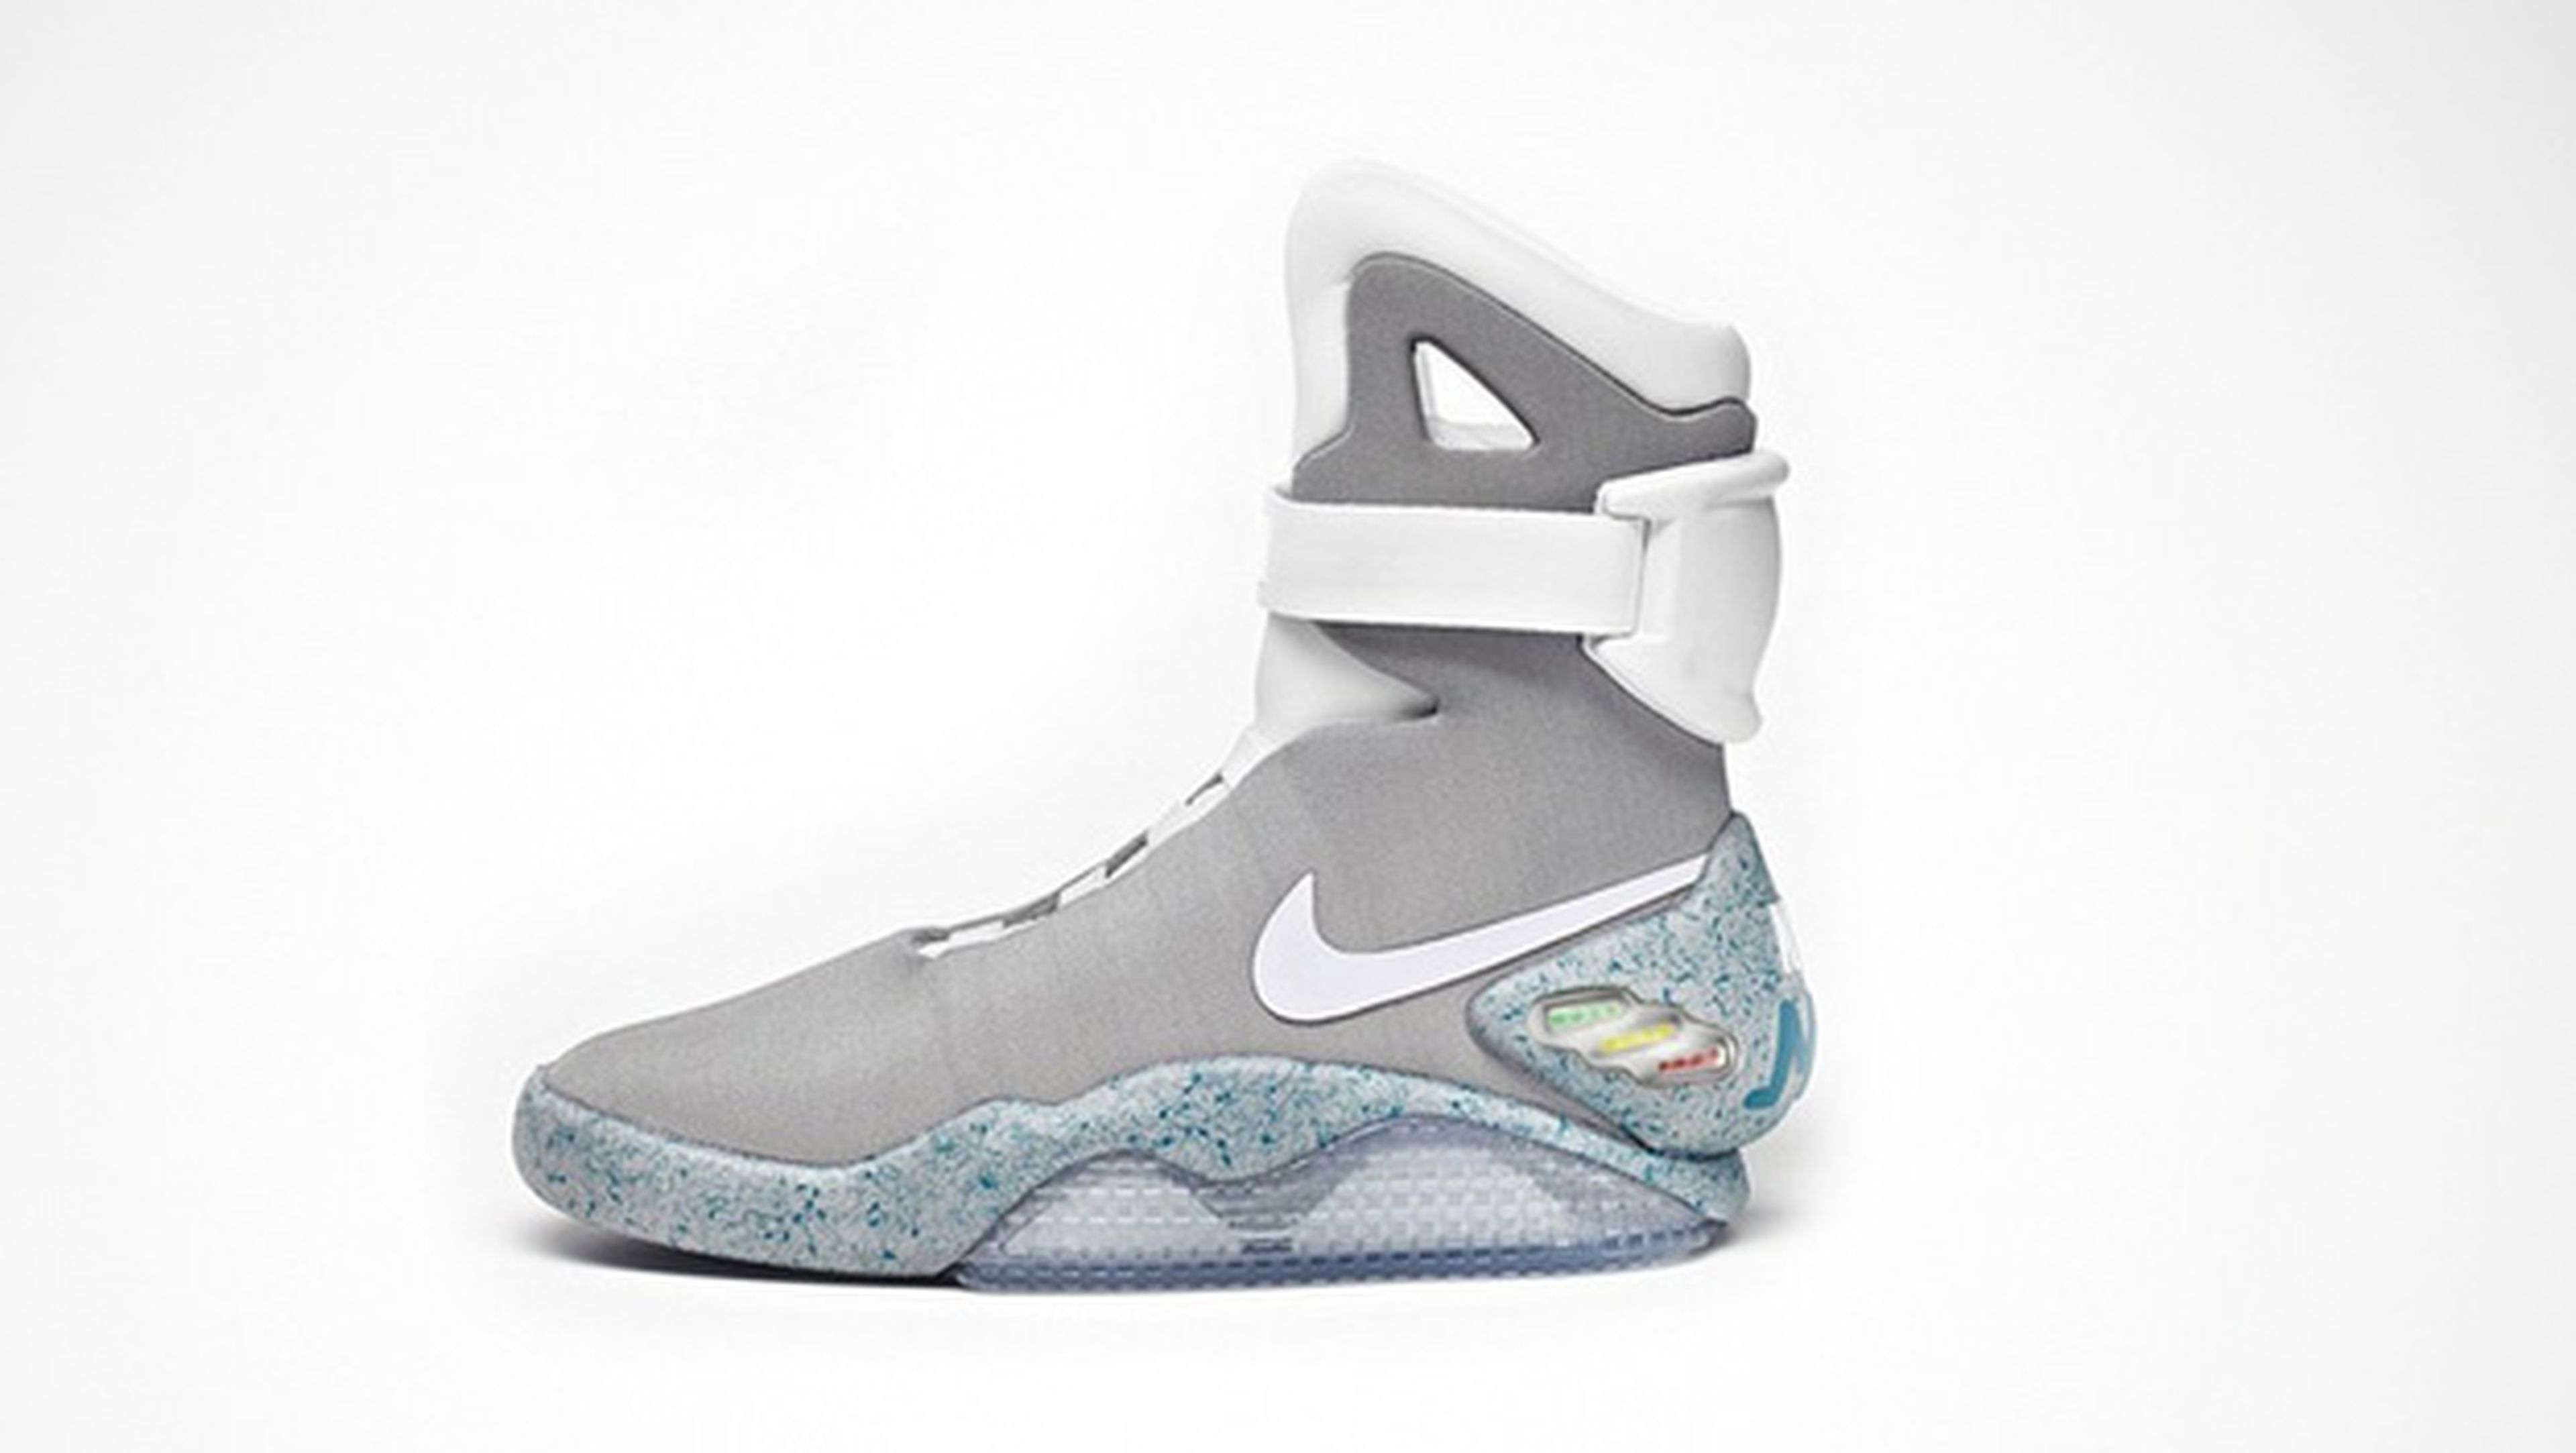 Nike lanzará las zapatillas Regreso al futuro en 2015 | Hoy